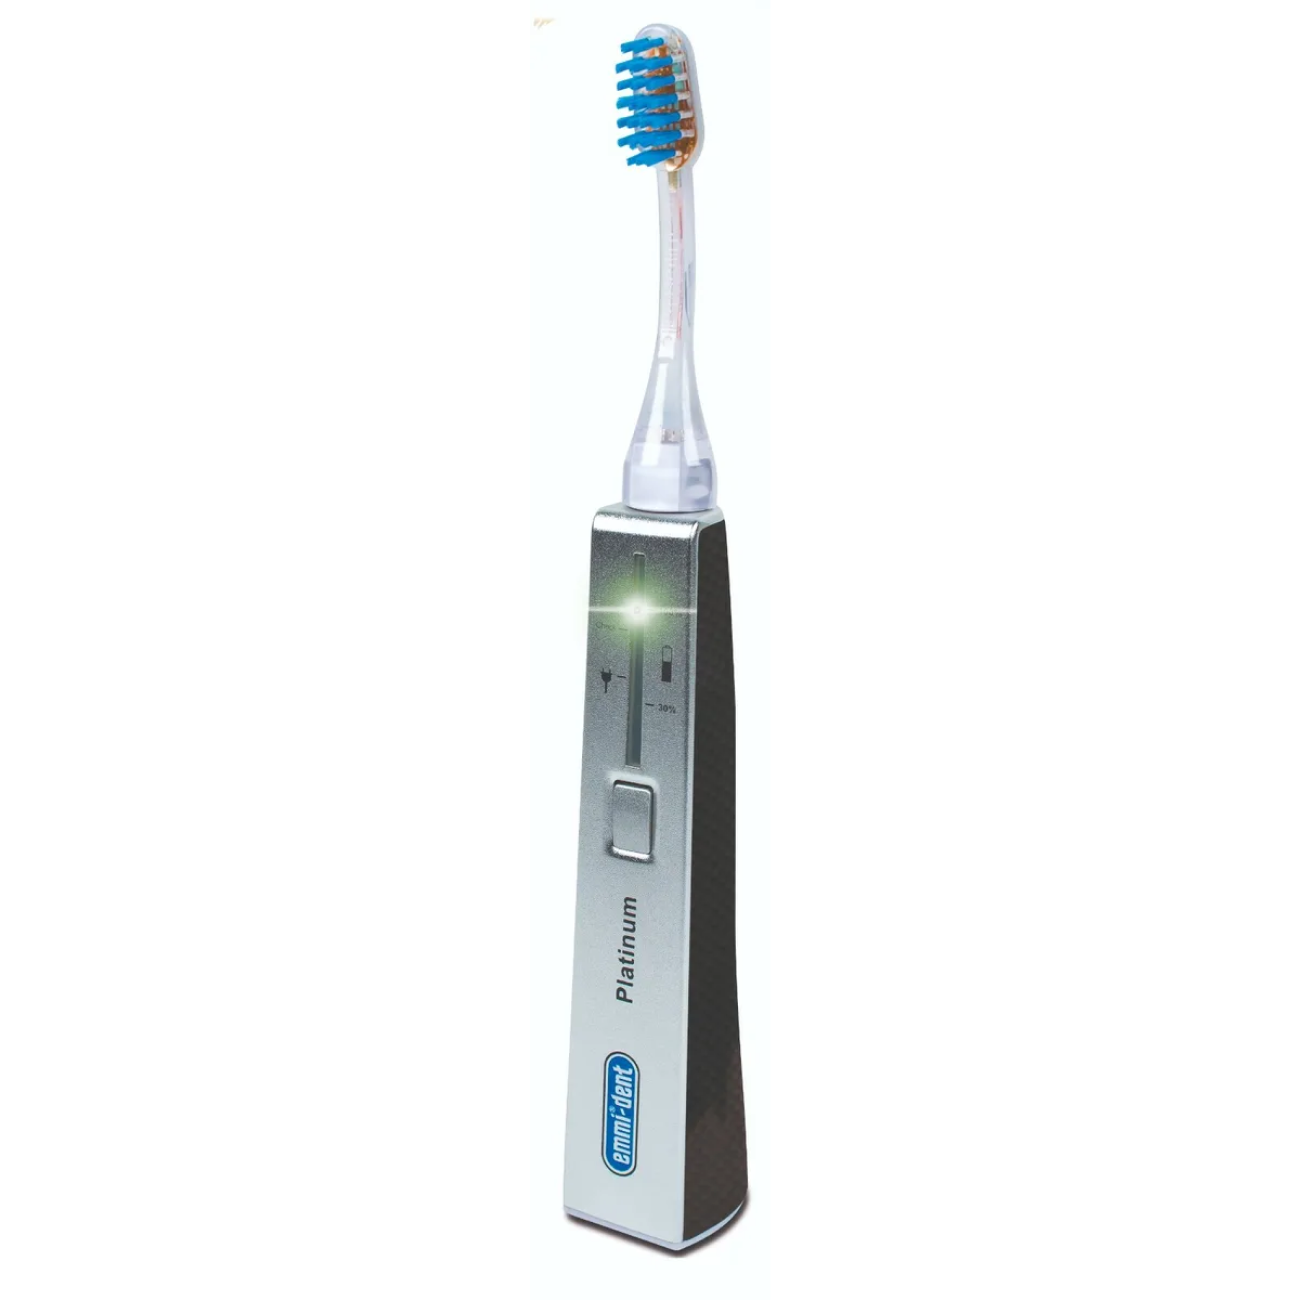 Электрическая зубная щетка Emmi-dent 6 Platinum